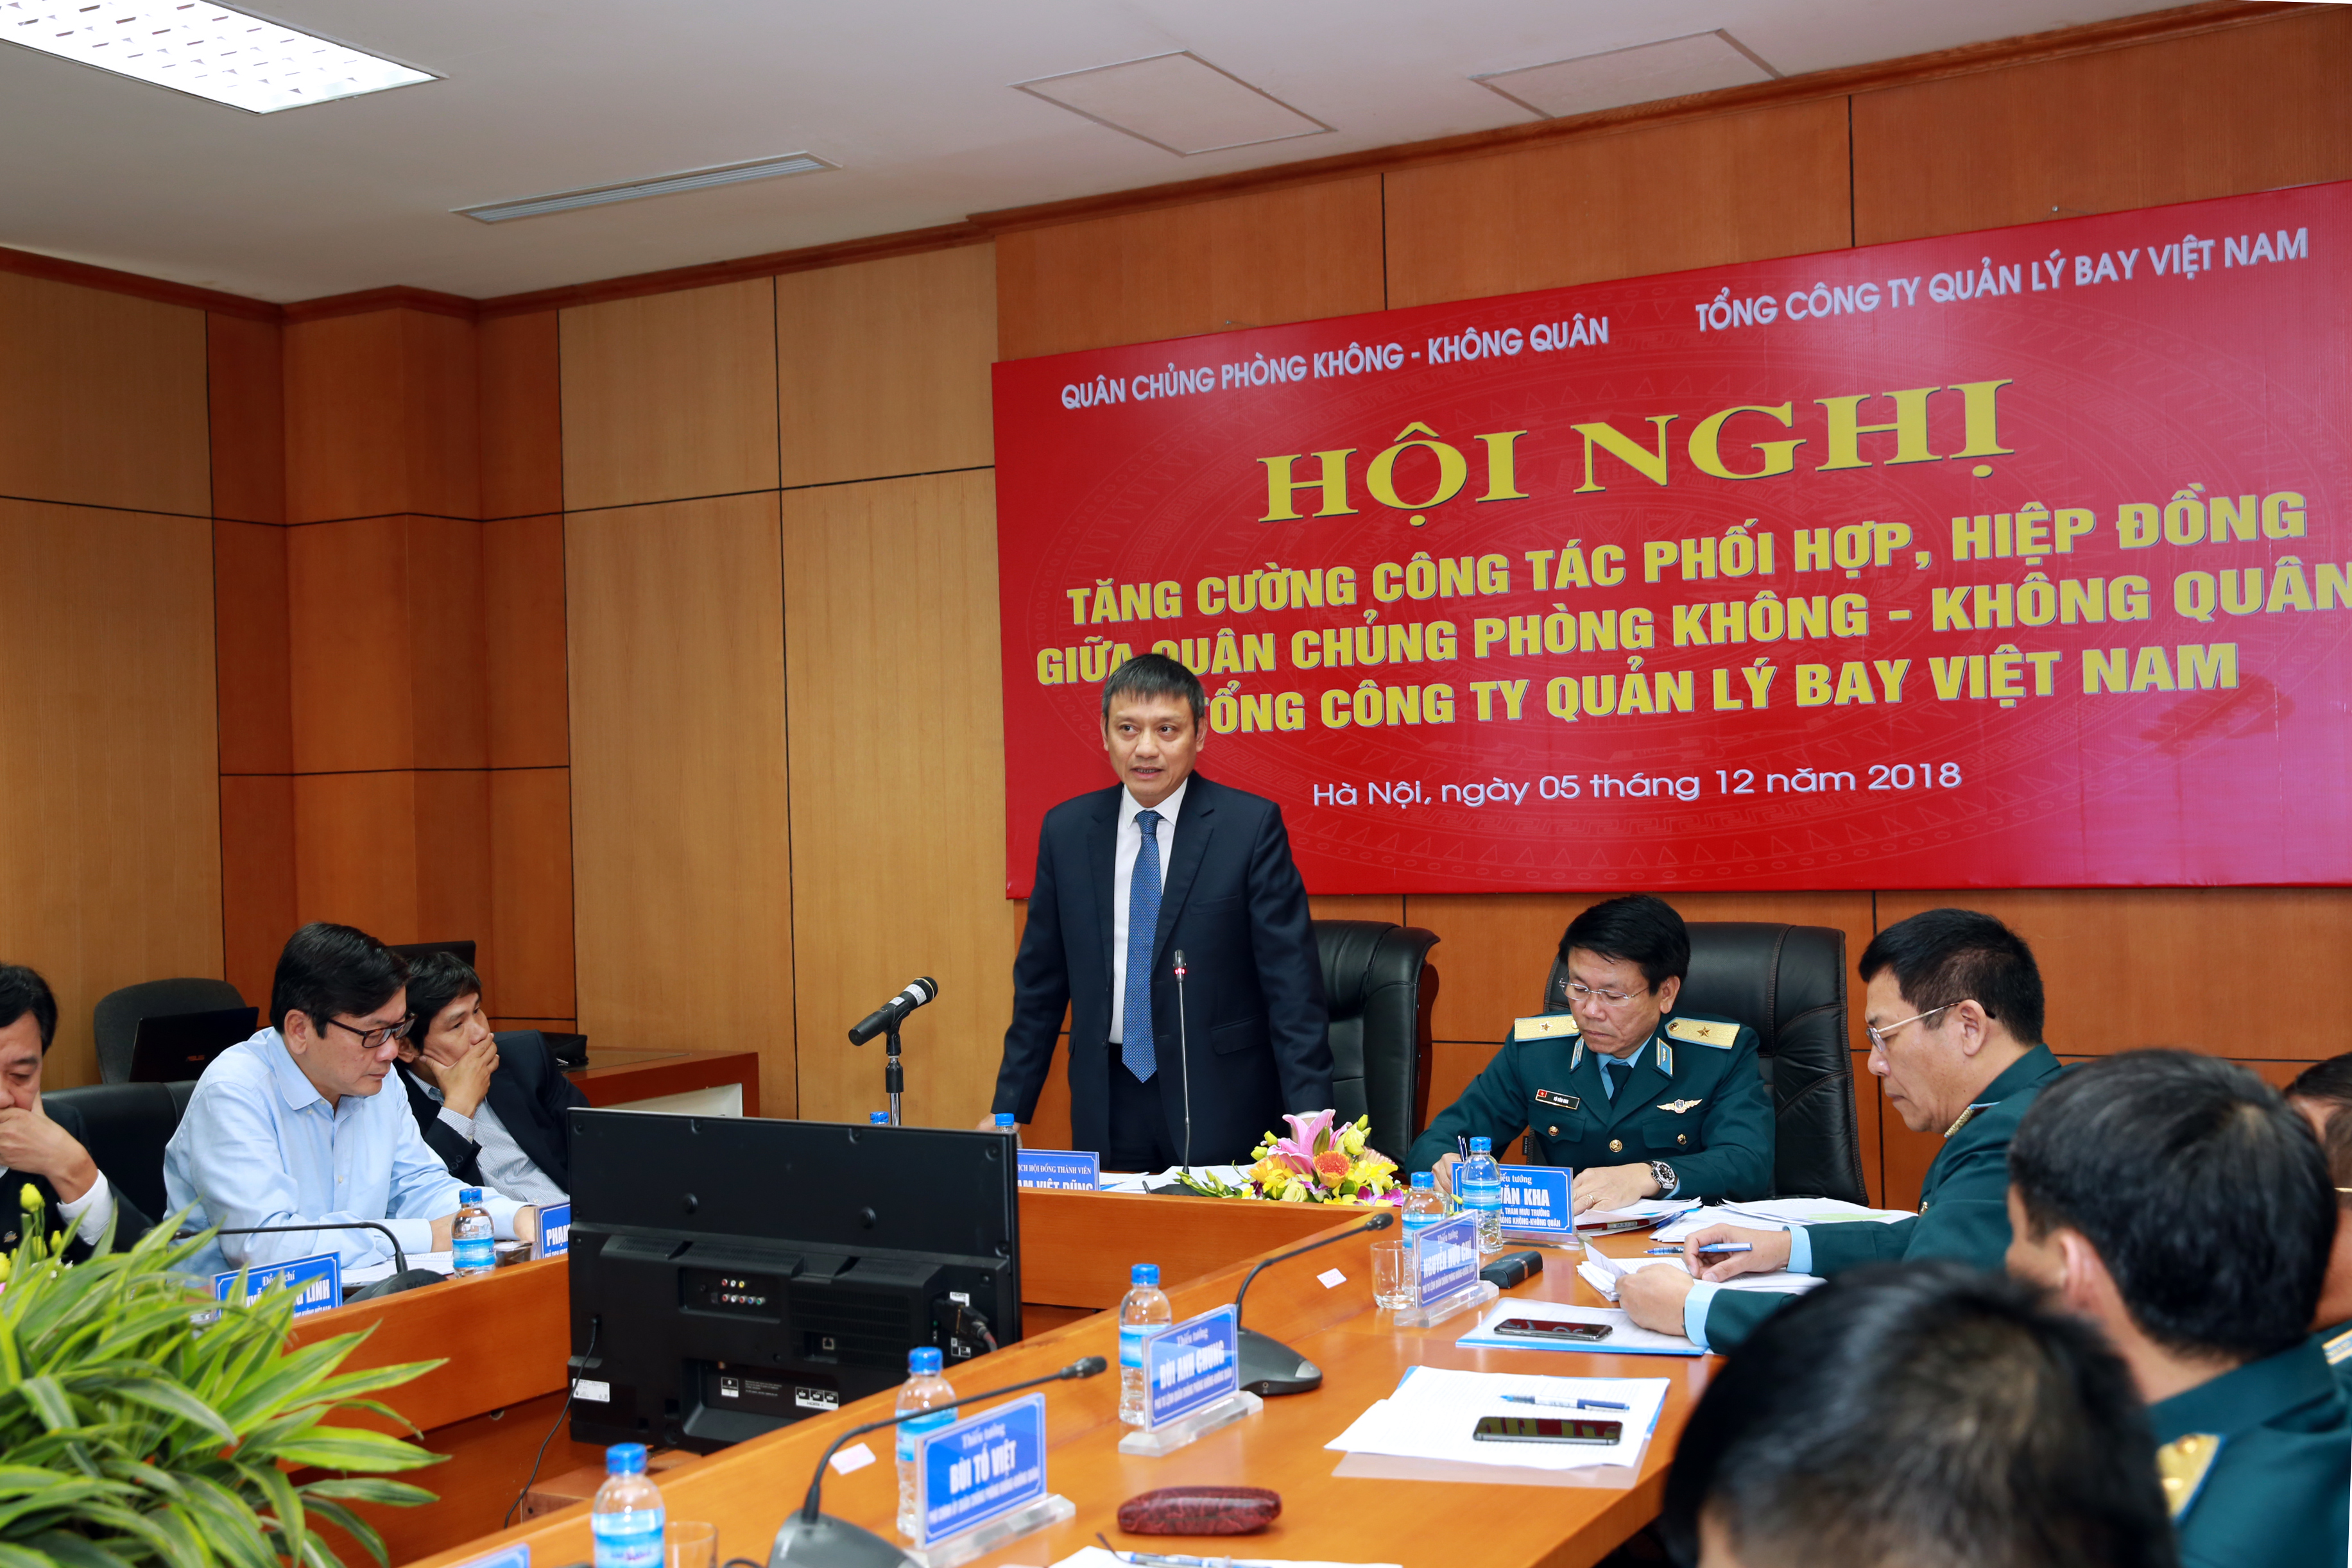 Hội nghị nâng cao hiệu quả công tác phối hợp, hiệp đồng giữa Quân chủng Phòng không không quân và Tổng công ty Quản lý bay Việt Nam năm 2018